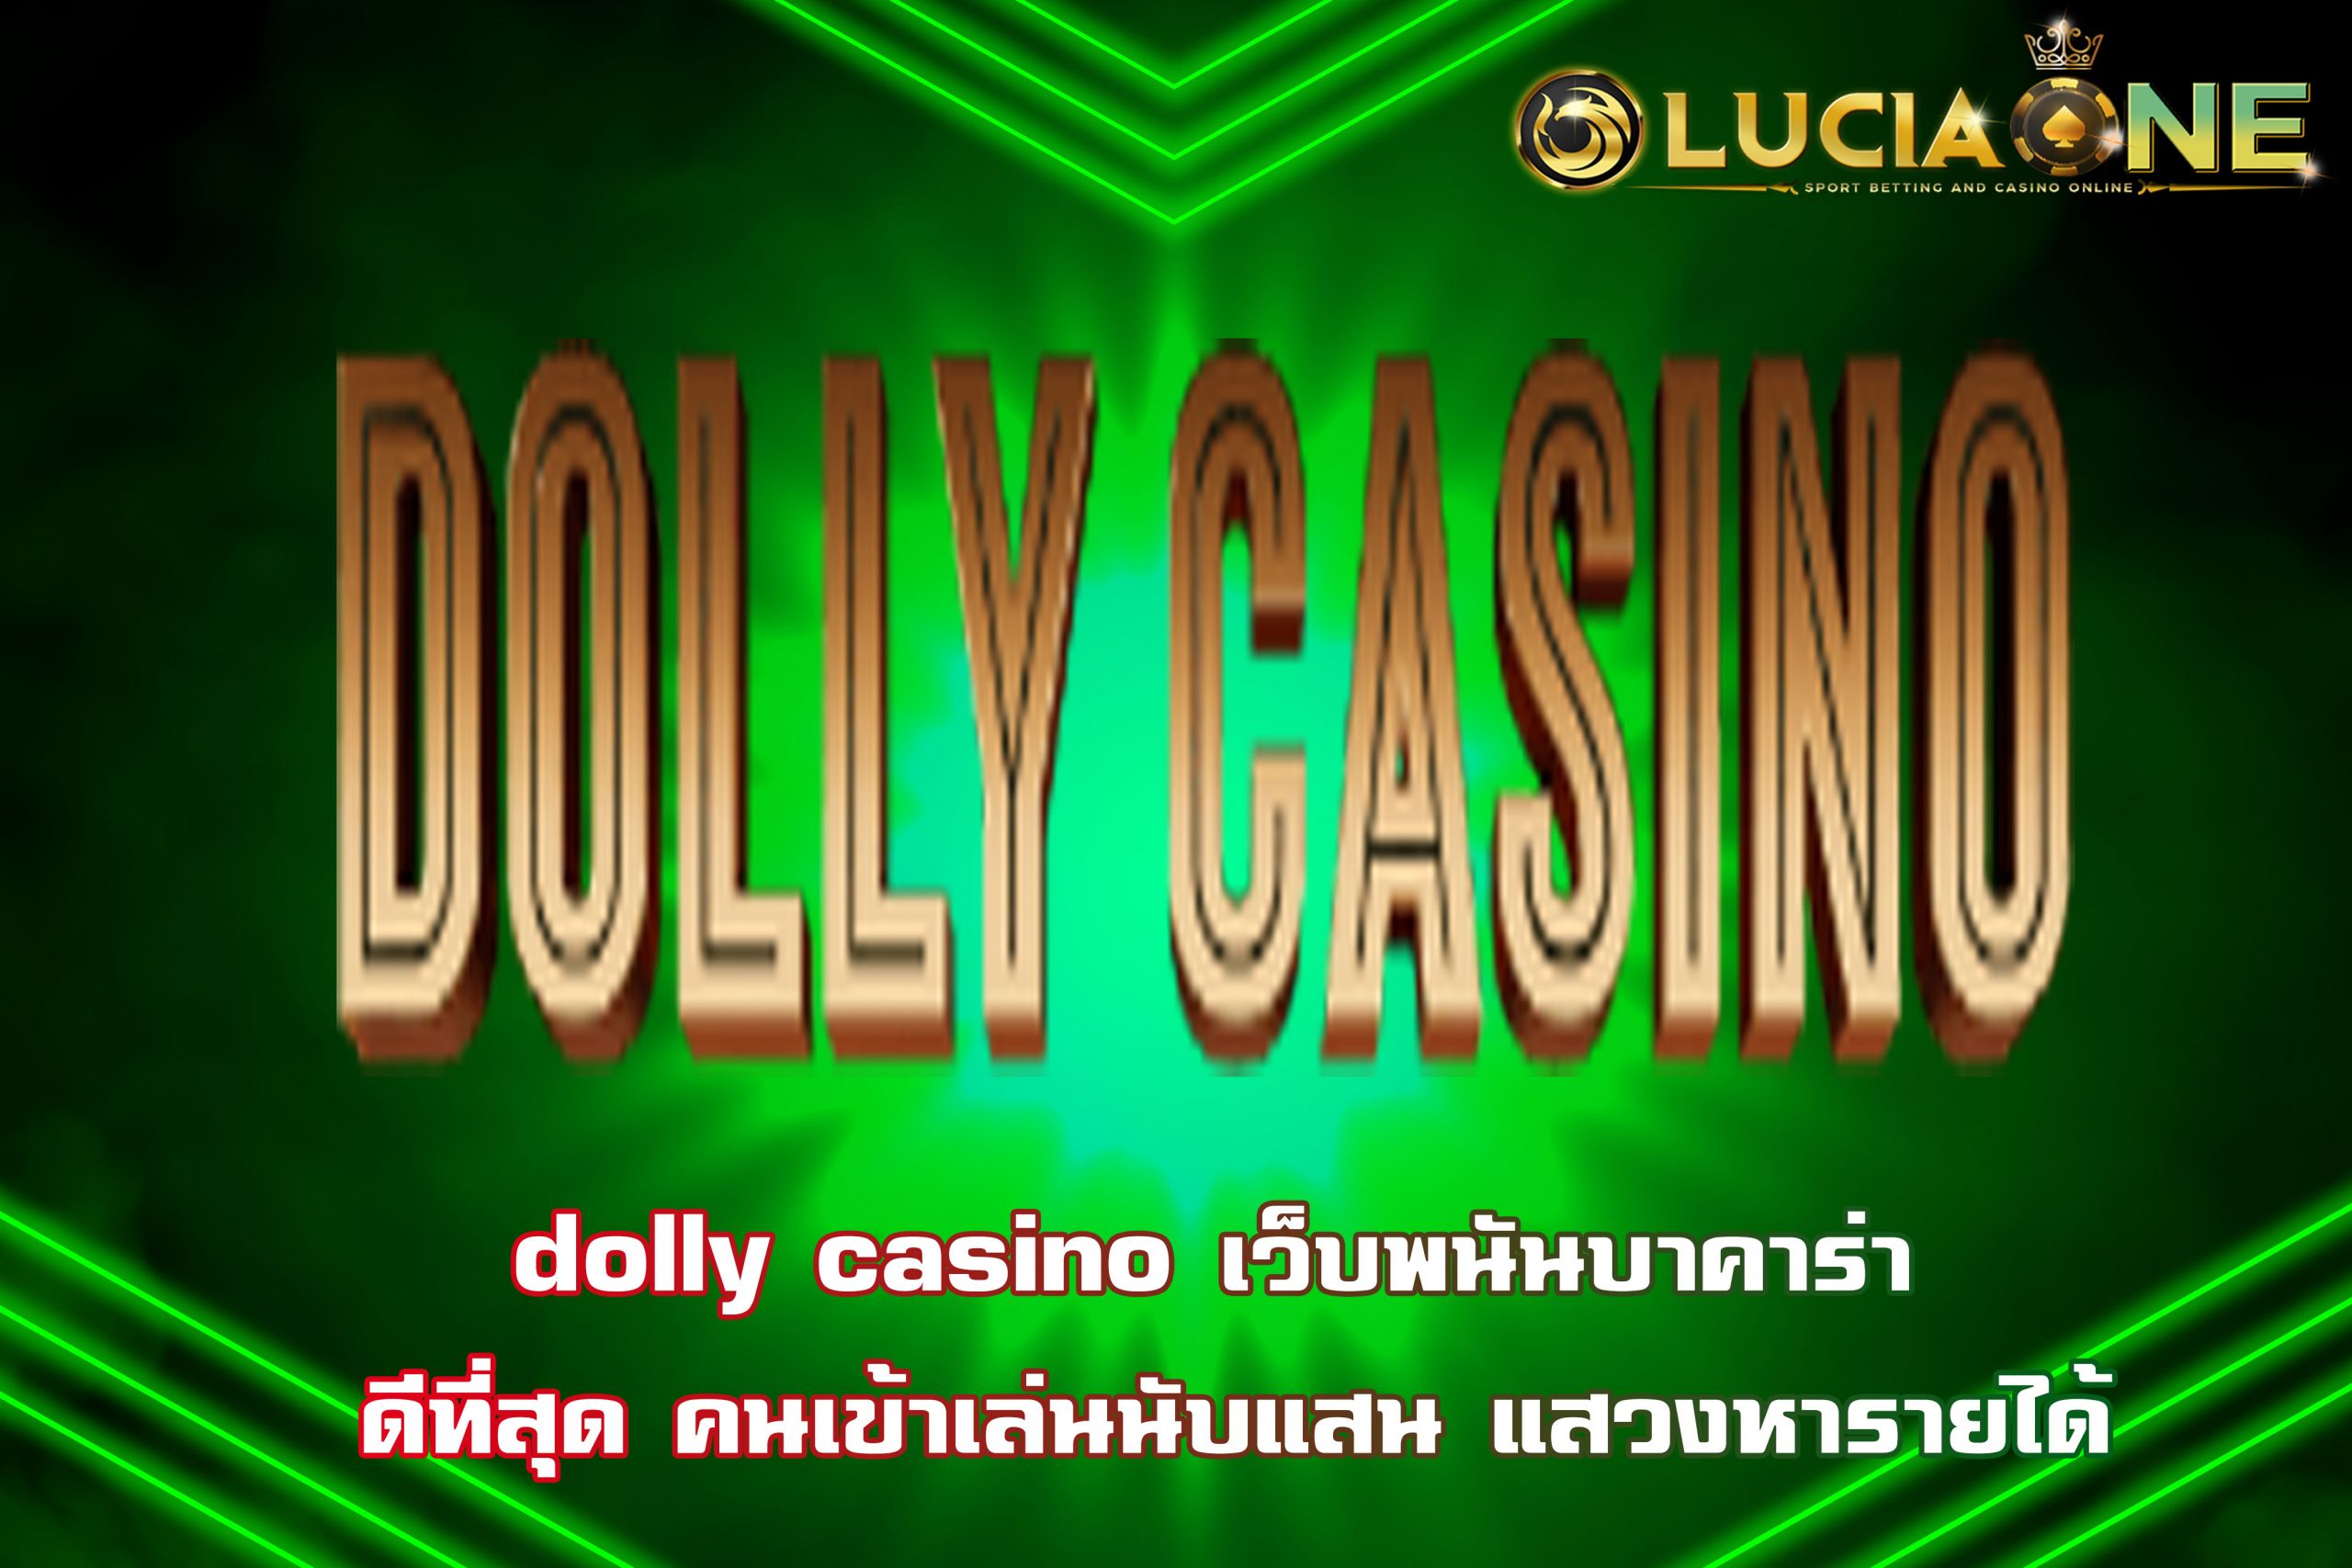 dolly casino เว็บพนันบาคาร่า ดีที่สุด คนเข้าเล่นนับแสน แสวงหารายได้